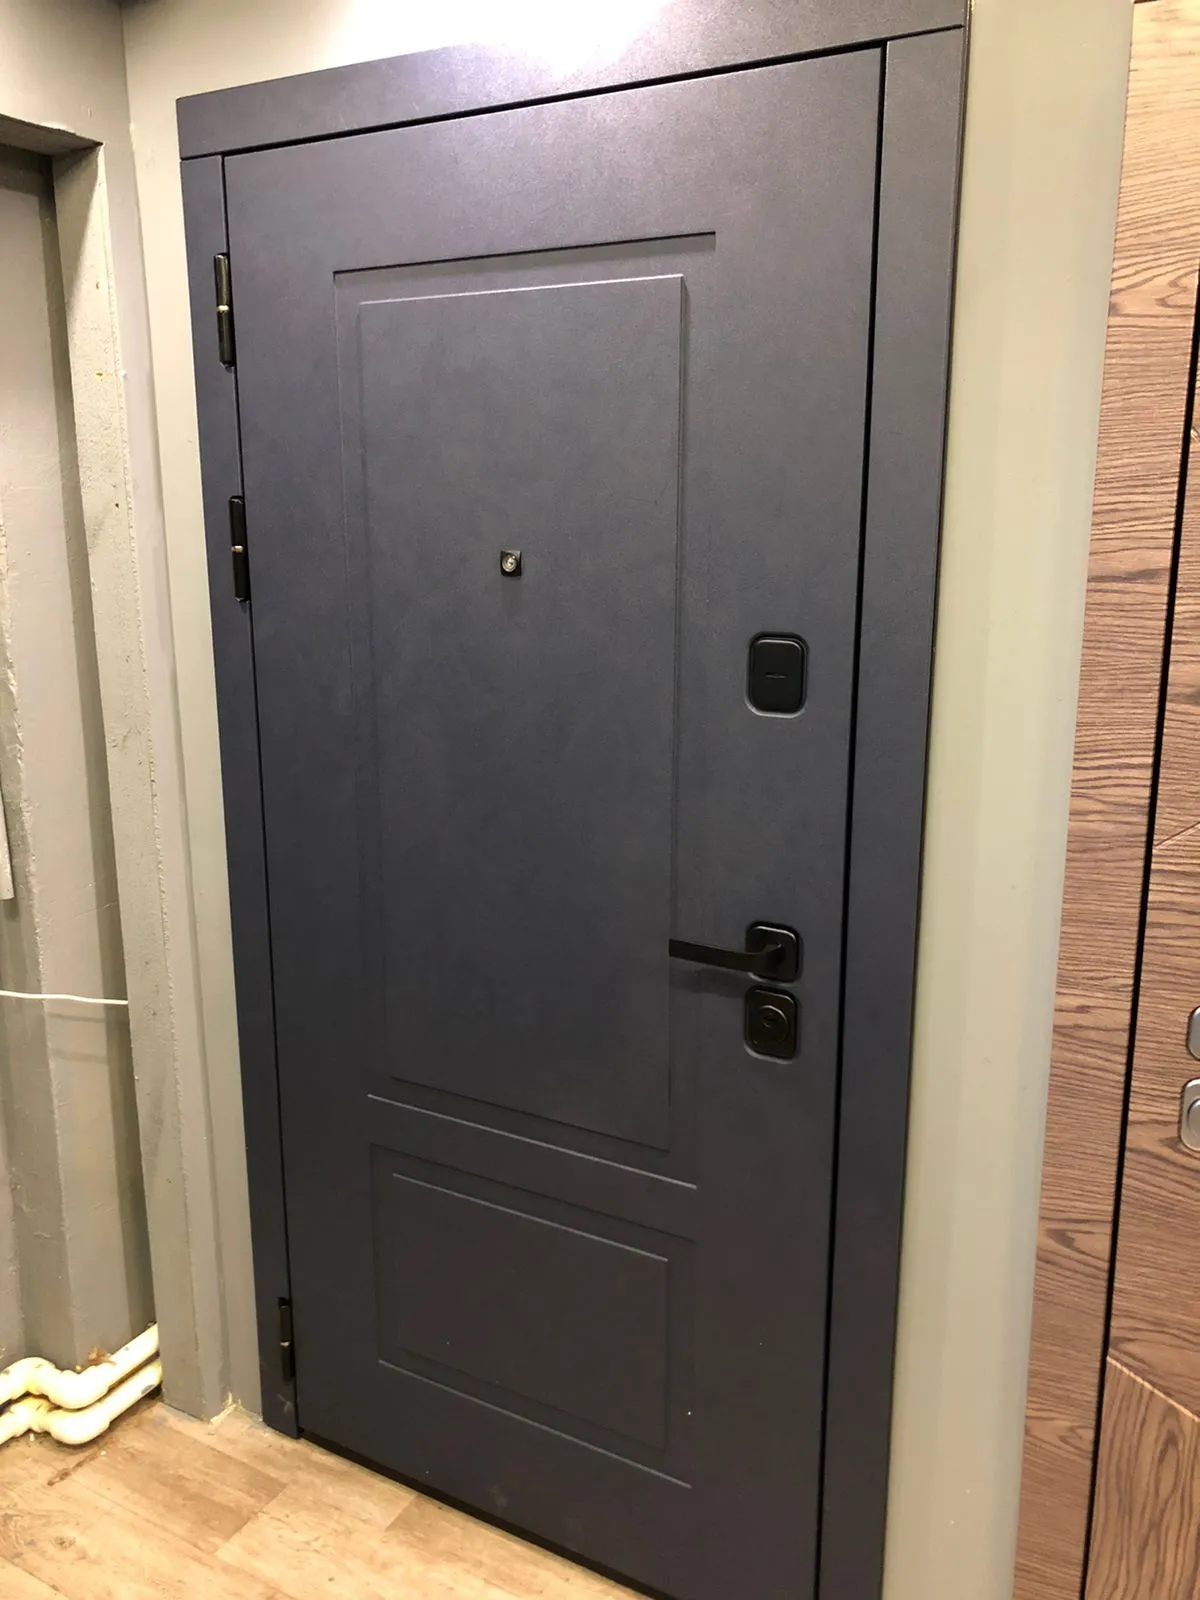 Входная дверь с шумоизоляцией ДИВА 93